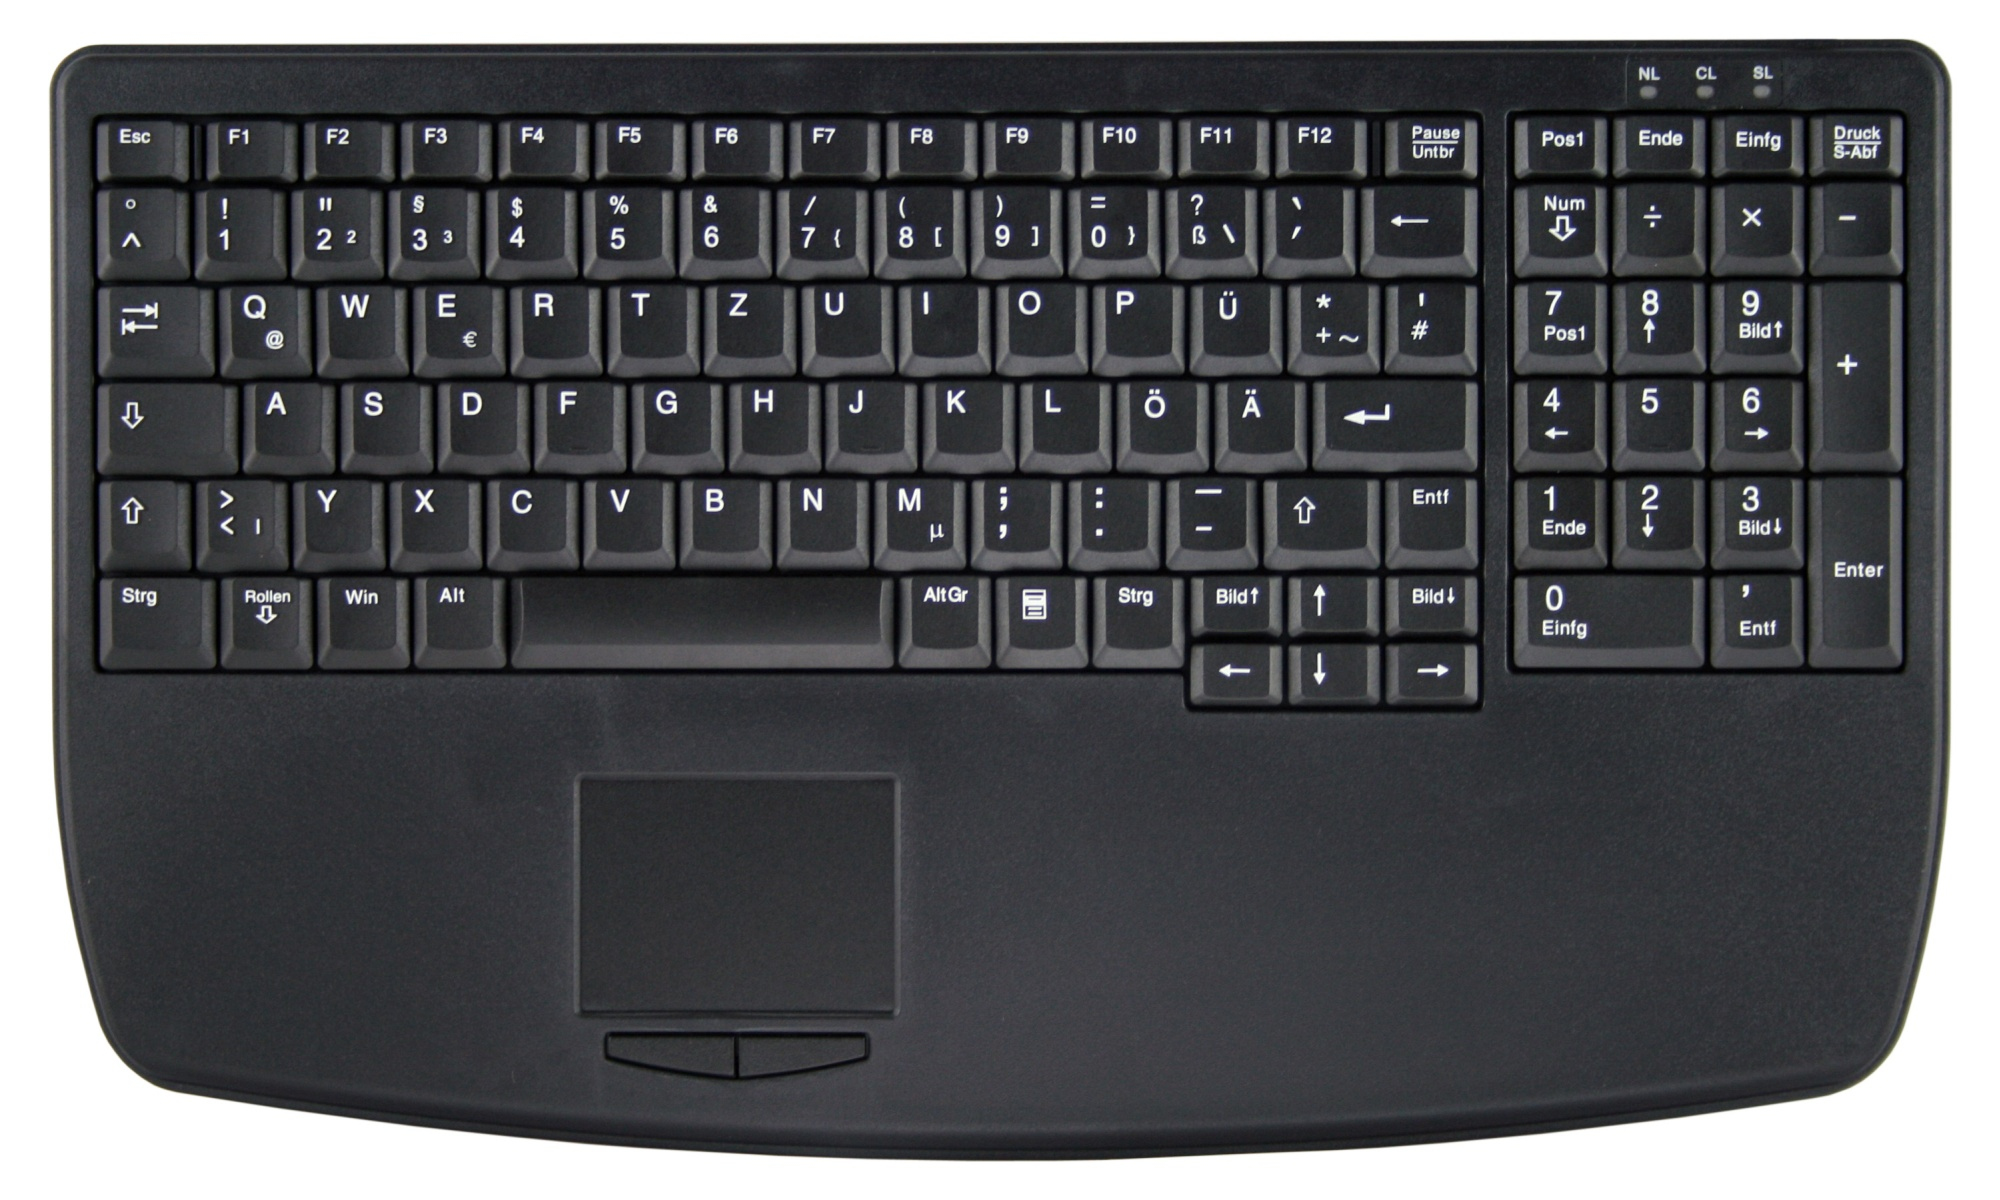 Active Key AK-7410-G keyboard USB QWERTZ German Black